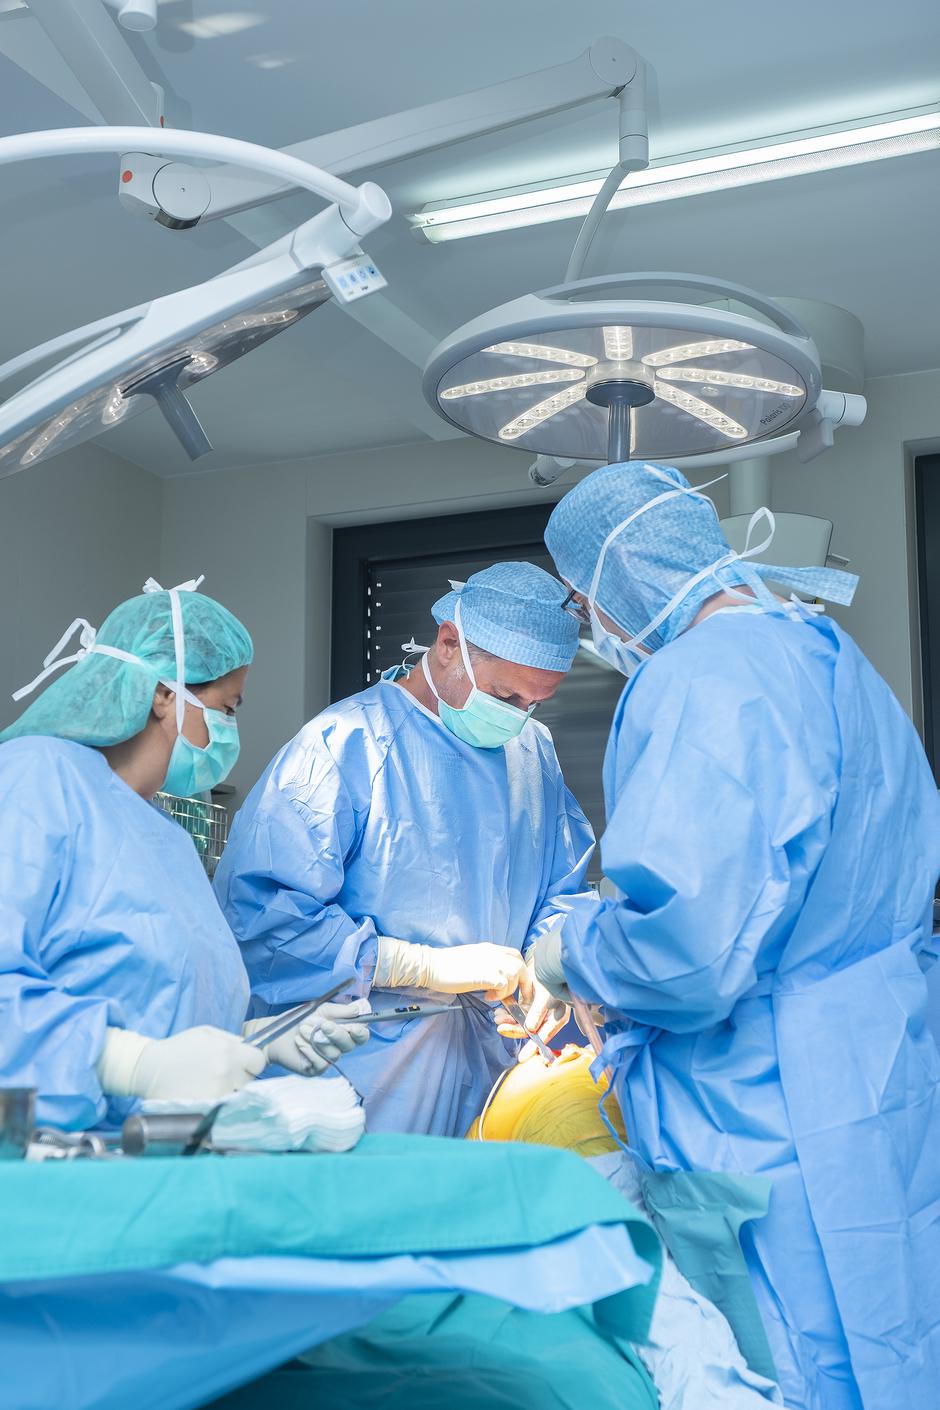 Inovativan pristup operacijama kuka u zagrebačkoj bolnici Arithera